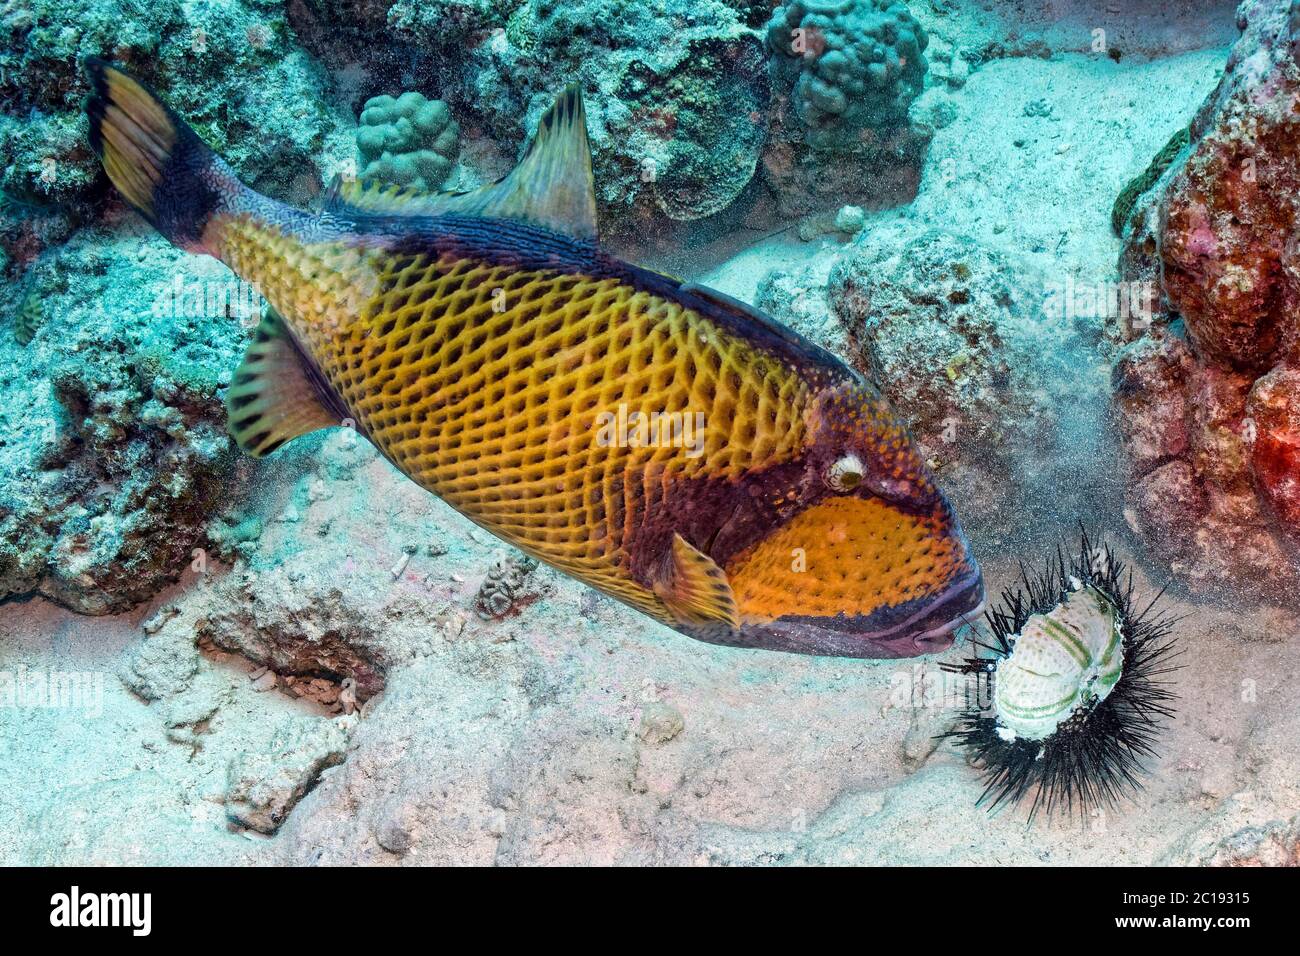 Titan triggerfish - Balistoides viridescens Stock Photo